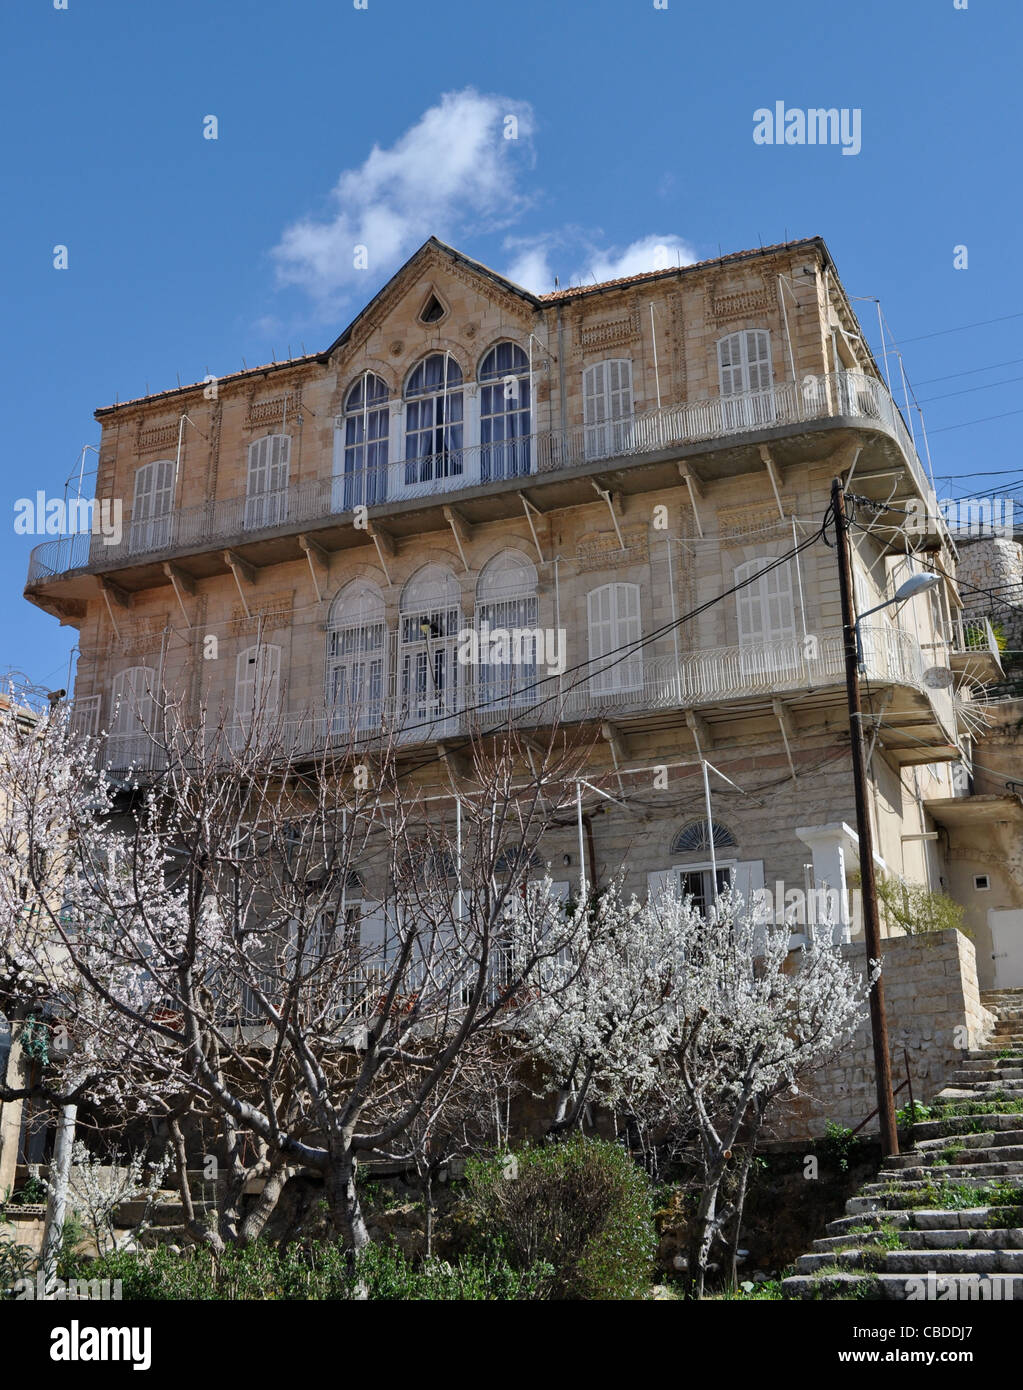 Zahlé, survivre à l'ère ottomane, l'emplacement de la chambre de 1860 massacre dans la lutte entre chrétiens et druzes. Banque D'Images